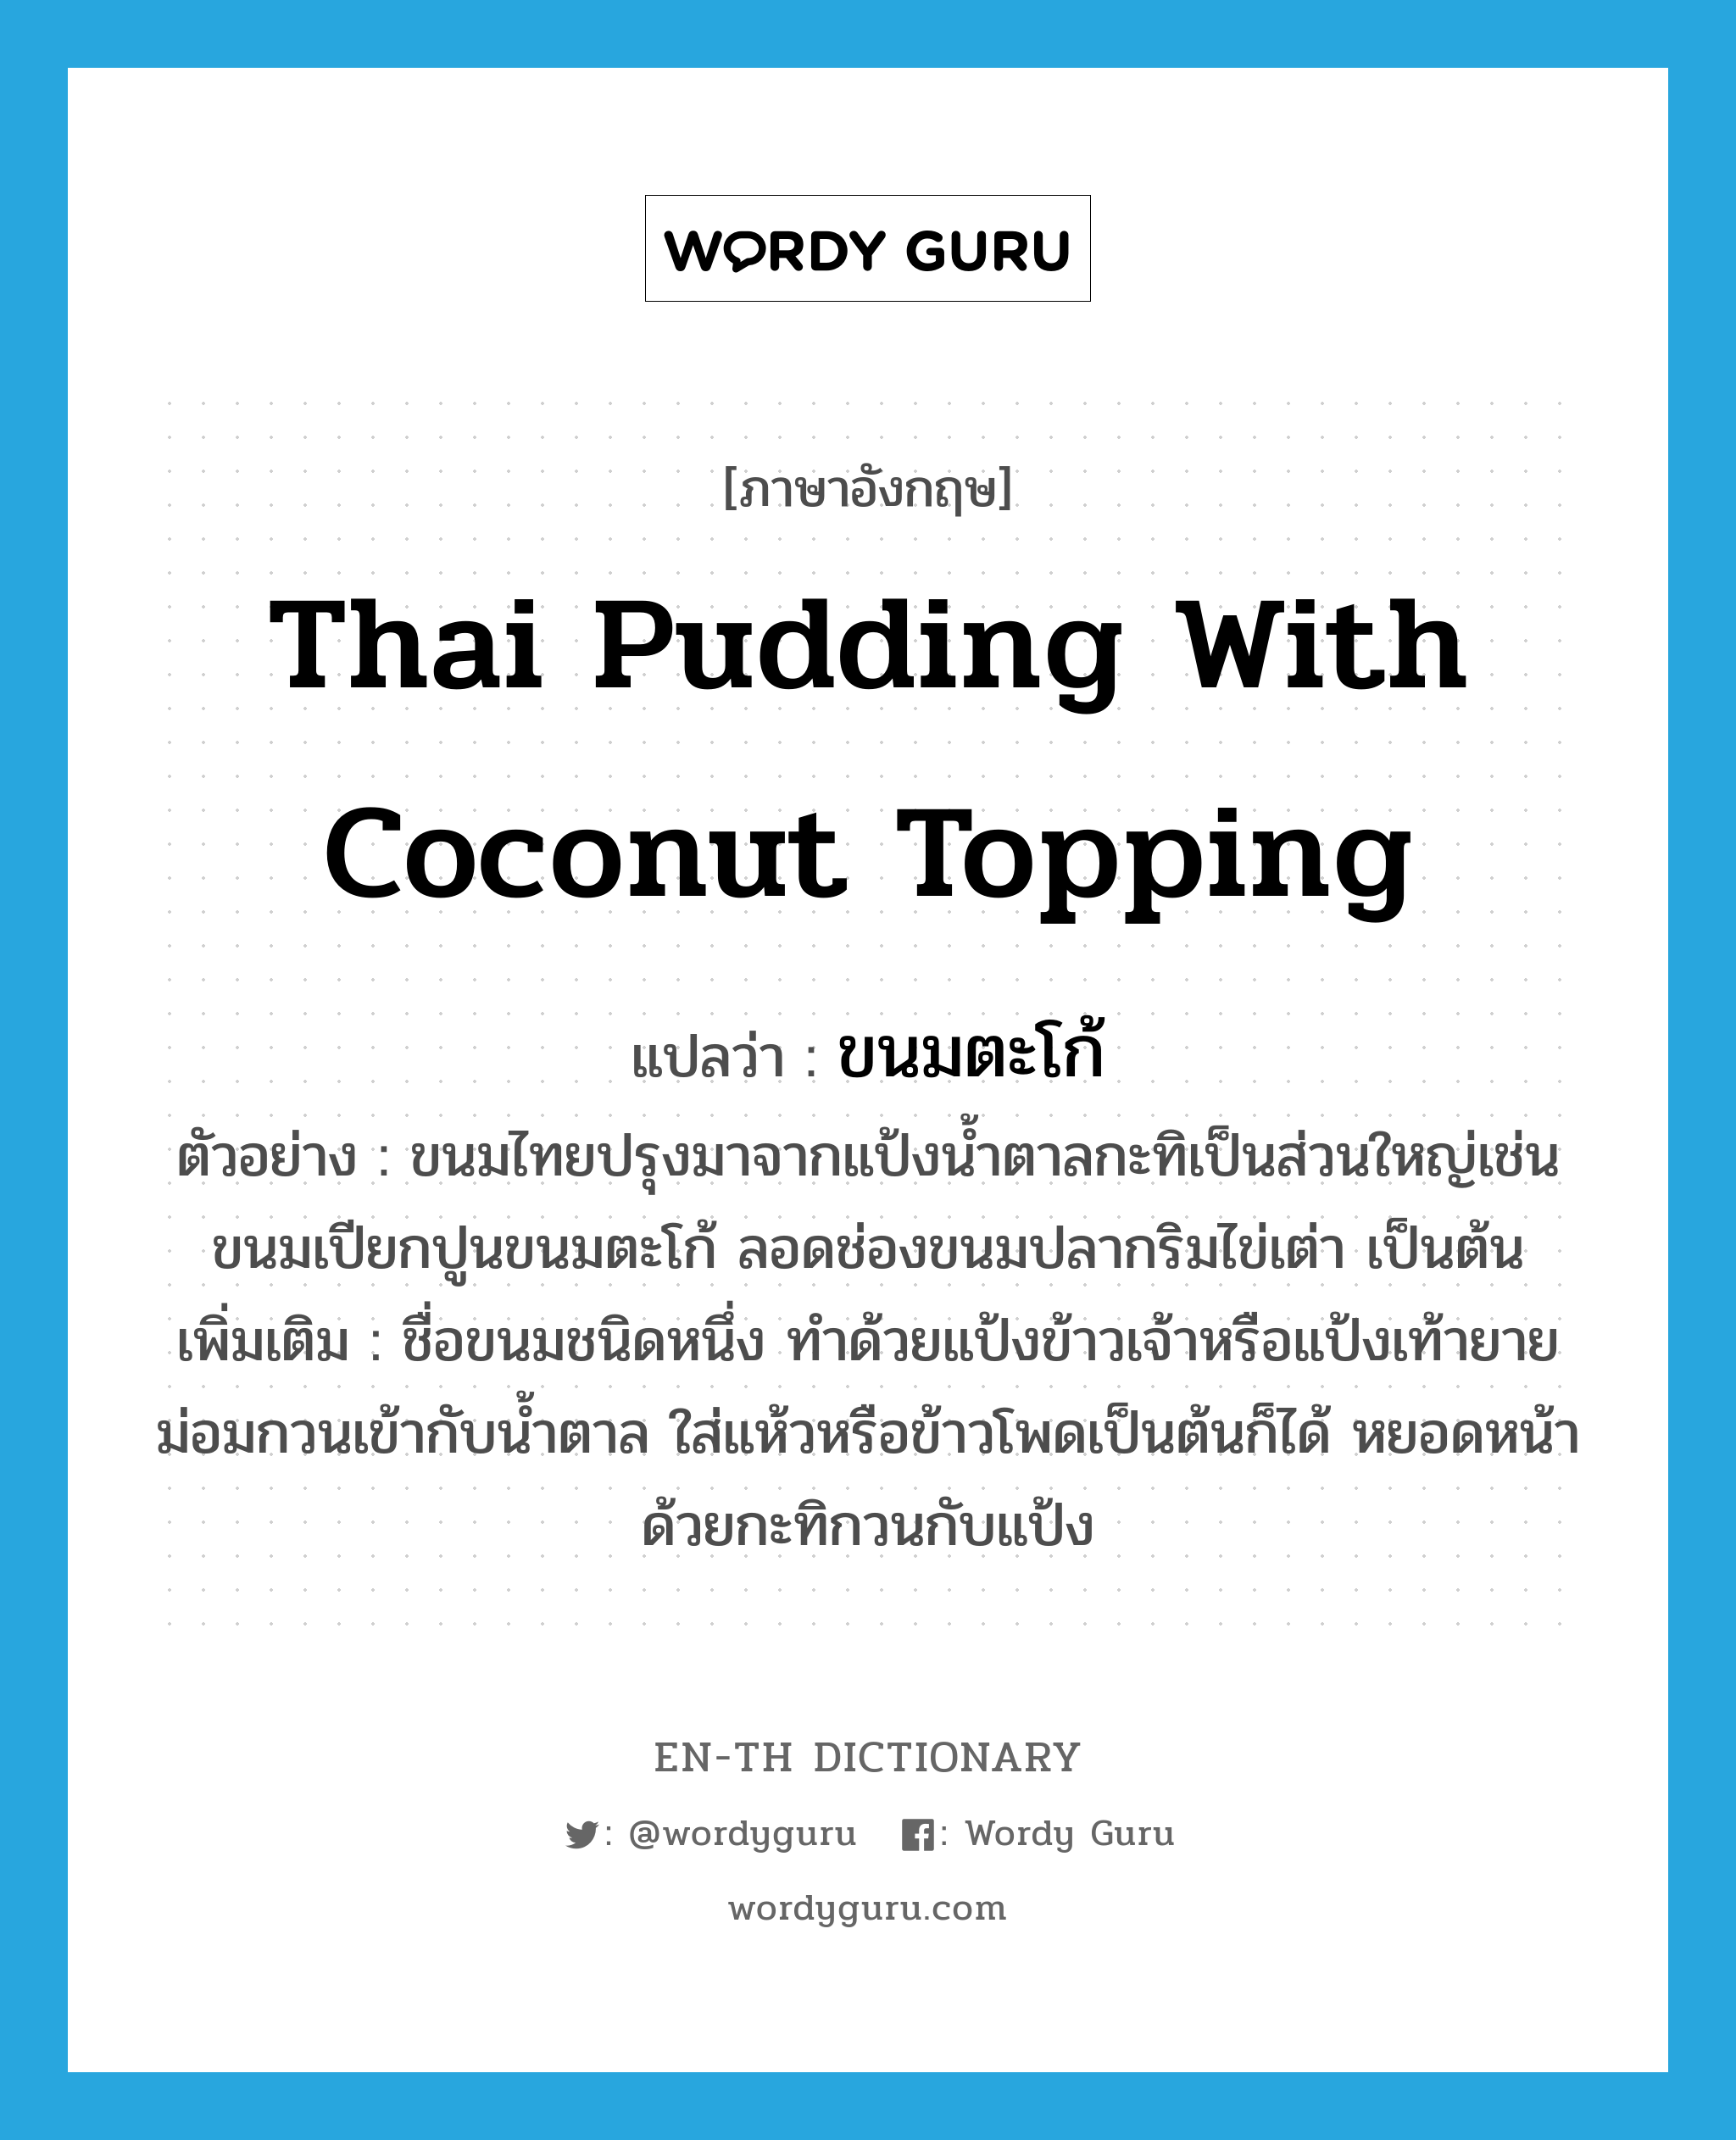 ขนมตะโก้ ภาษาอังกฤษ?, คำศัพท์ภาษาอังกฤษ ขนมตะโก้ แปลว่า Thai pudding with coconut topping ประเภท N ตัวอย่าง ขนมไทยปรุงมาจากแป้งน้ำตาลกะทิเป็นส่วนใหญ่เช่นขนมเปียกปูนขนมตะโก้ ลอดช่องขนมปลากริมไข่เต่า เป็นต้น เพิ่มเติม ชื่อขนมชนิดหนึ่ง ทำด้วยแป้งข้าวเจ้าหรือแป้งเท้ายายม่อมกวนเข้ากับน้ำตาล ใส่แห้วหรือข้าวโพดเป็นต้นก็ได้ หยอดหน้าด้วยกะทิกวนกับแป้ง หมวด N